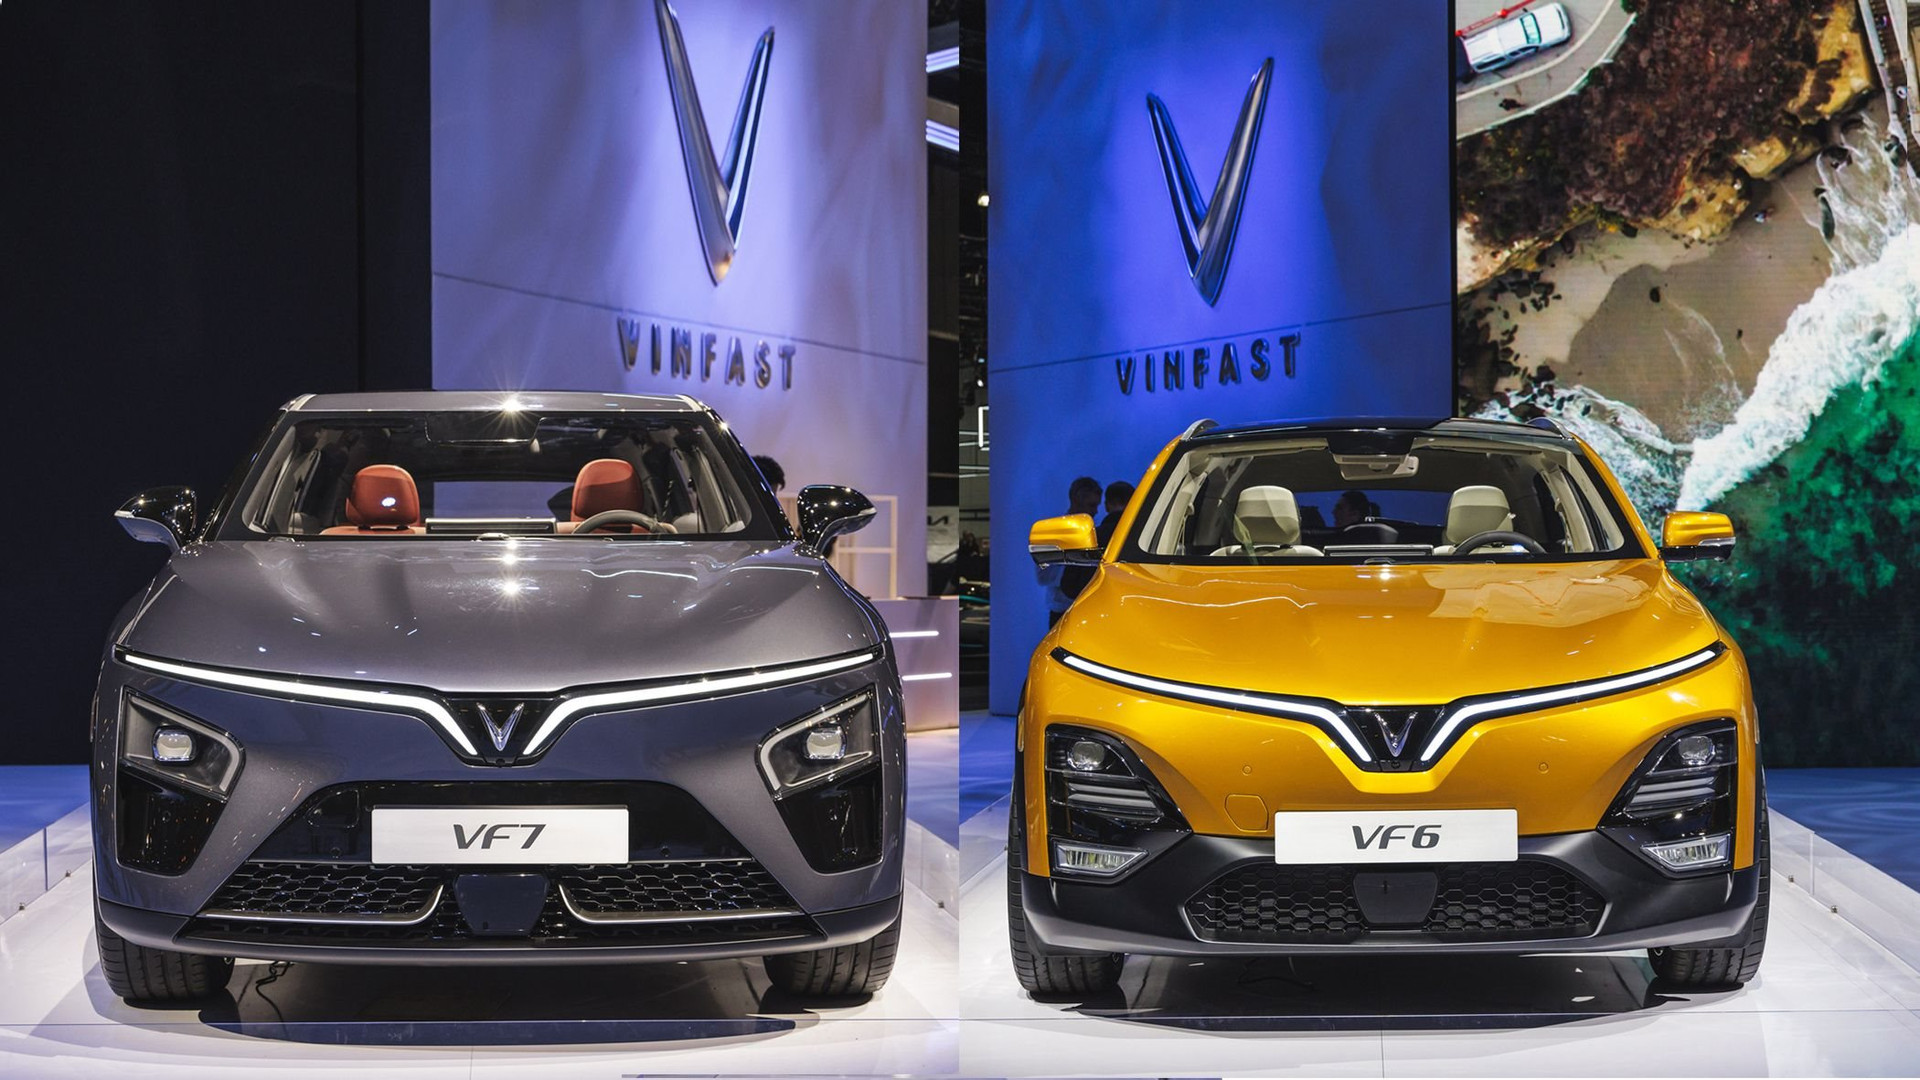 VinFast chính thức đổ bộ thị trường sản xuất và xuất khẩu ô tô lớn nhất Đông Nam Á- Ảnh 1.